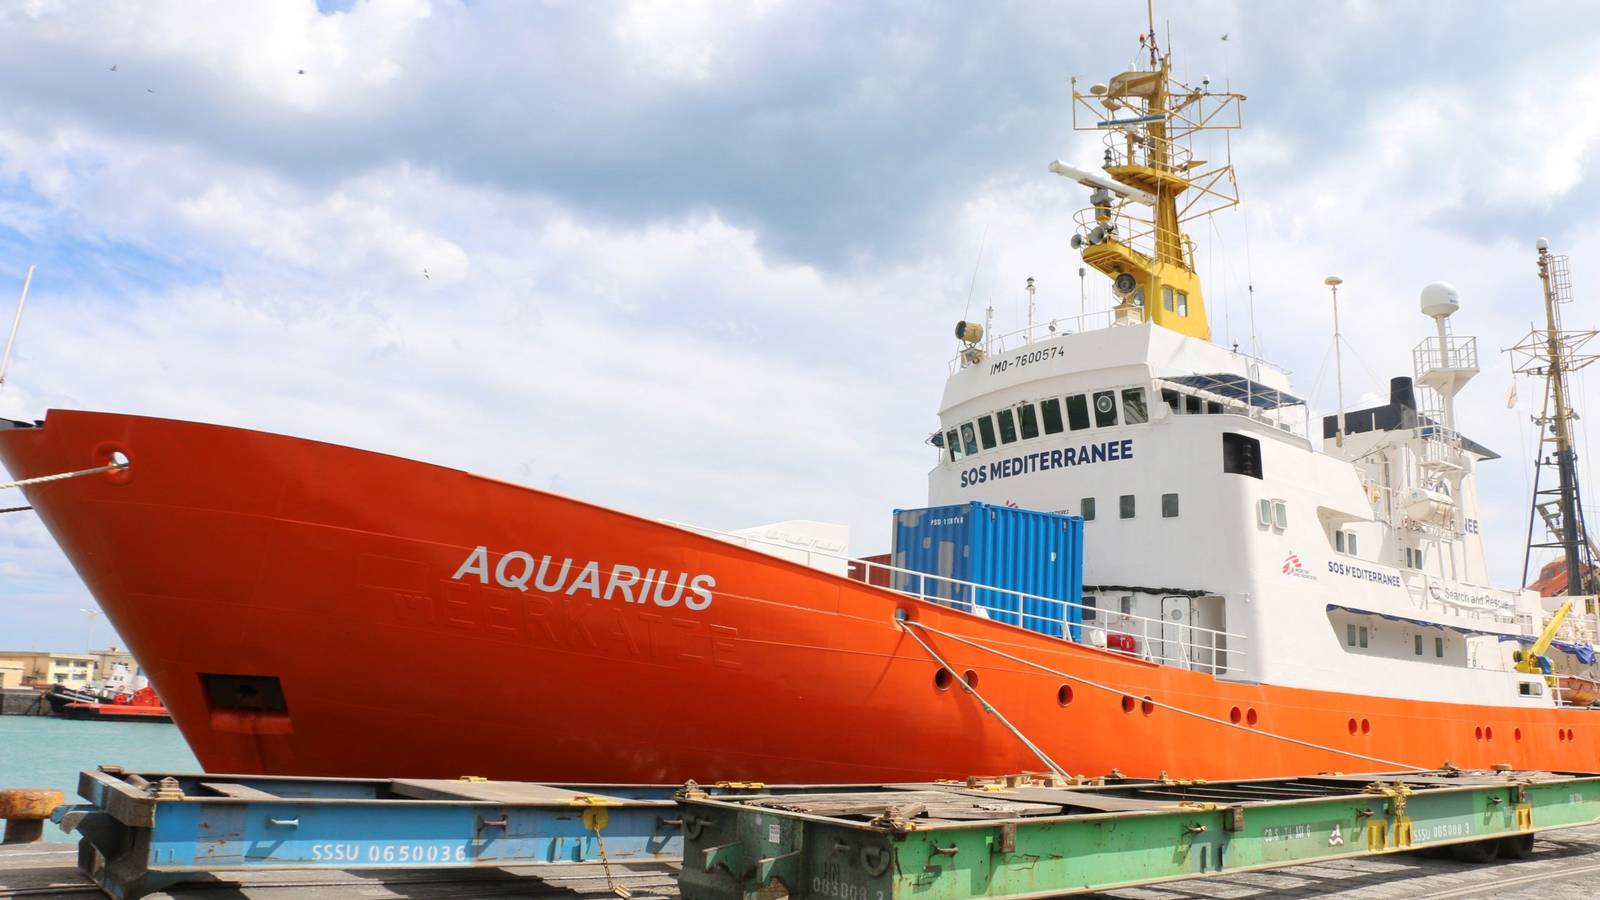 Italia inmovilizó el barco Aquarius  por presunto tratamiento ilegal de residuos